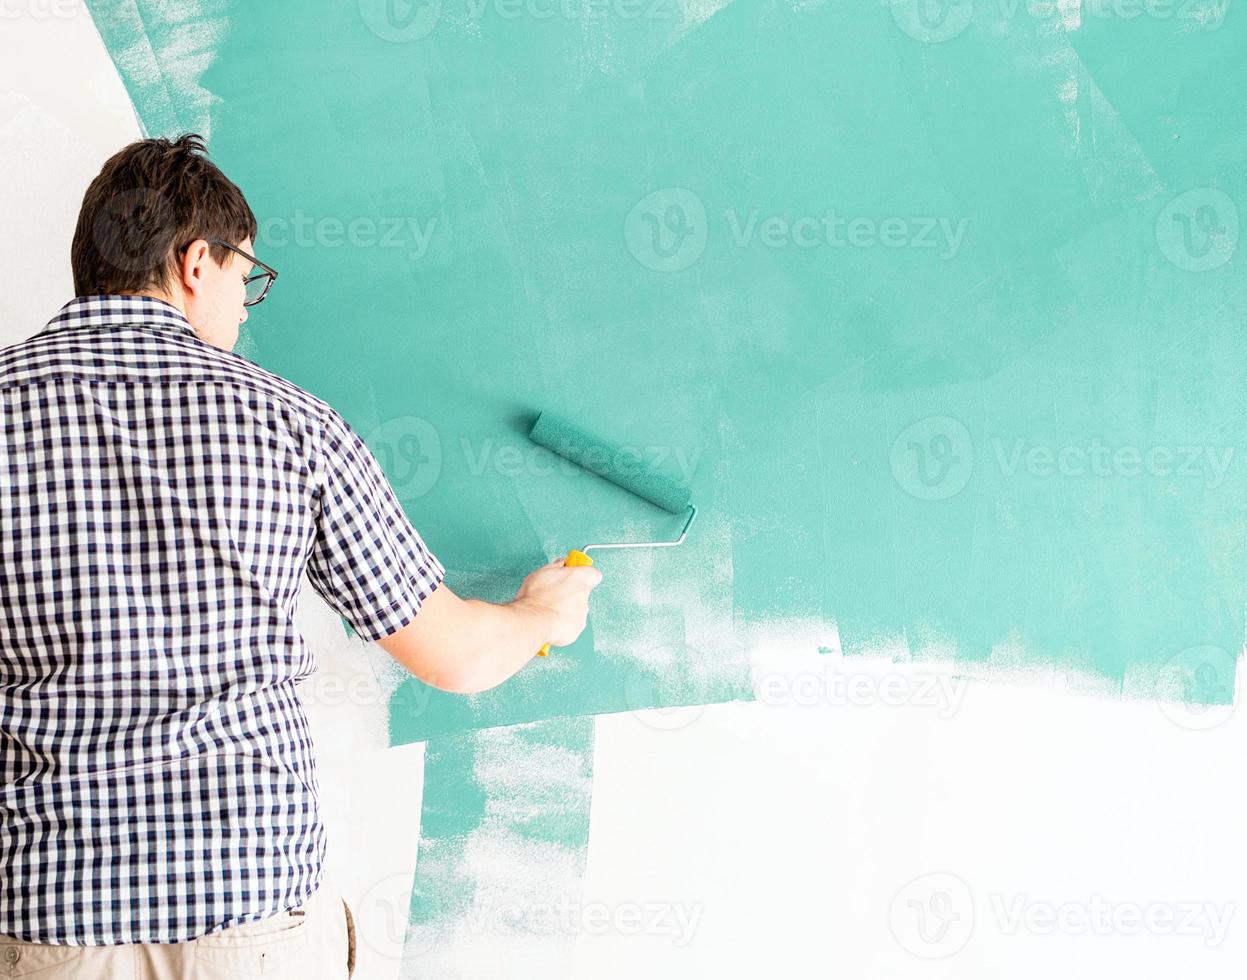 uomo che colora il muro di verde con un rullo foto